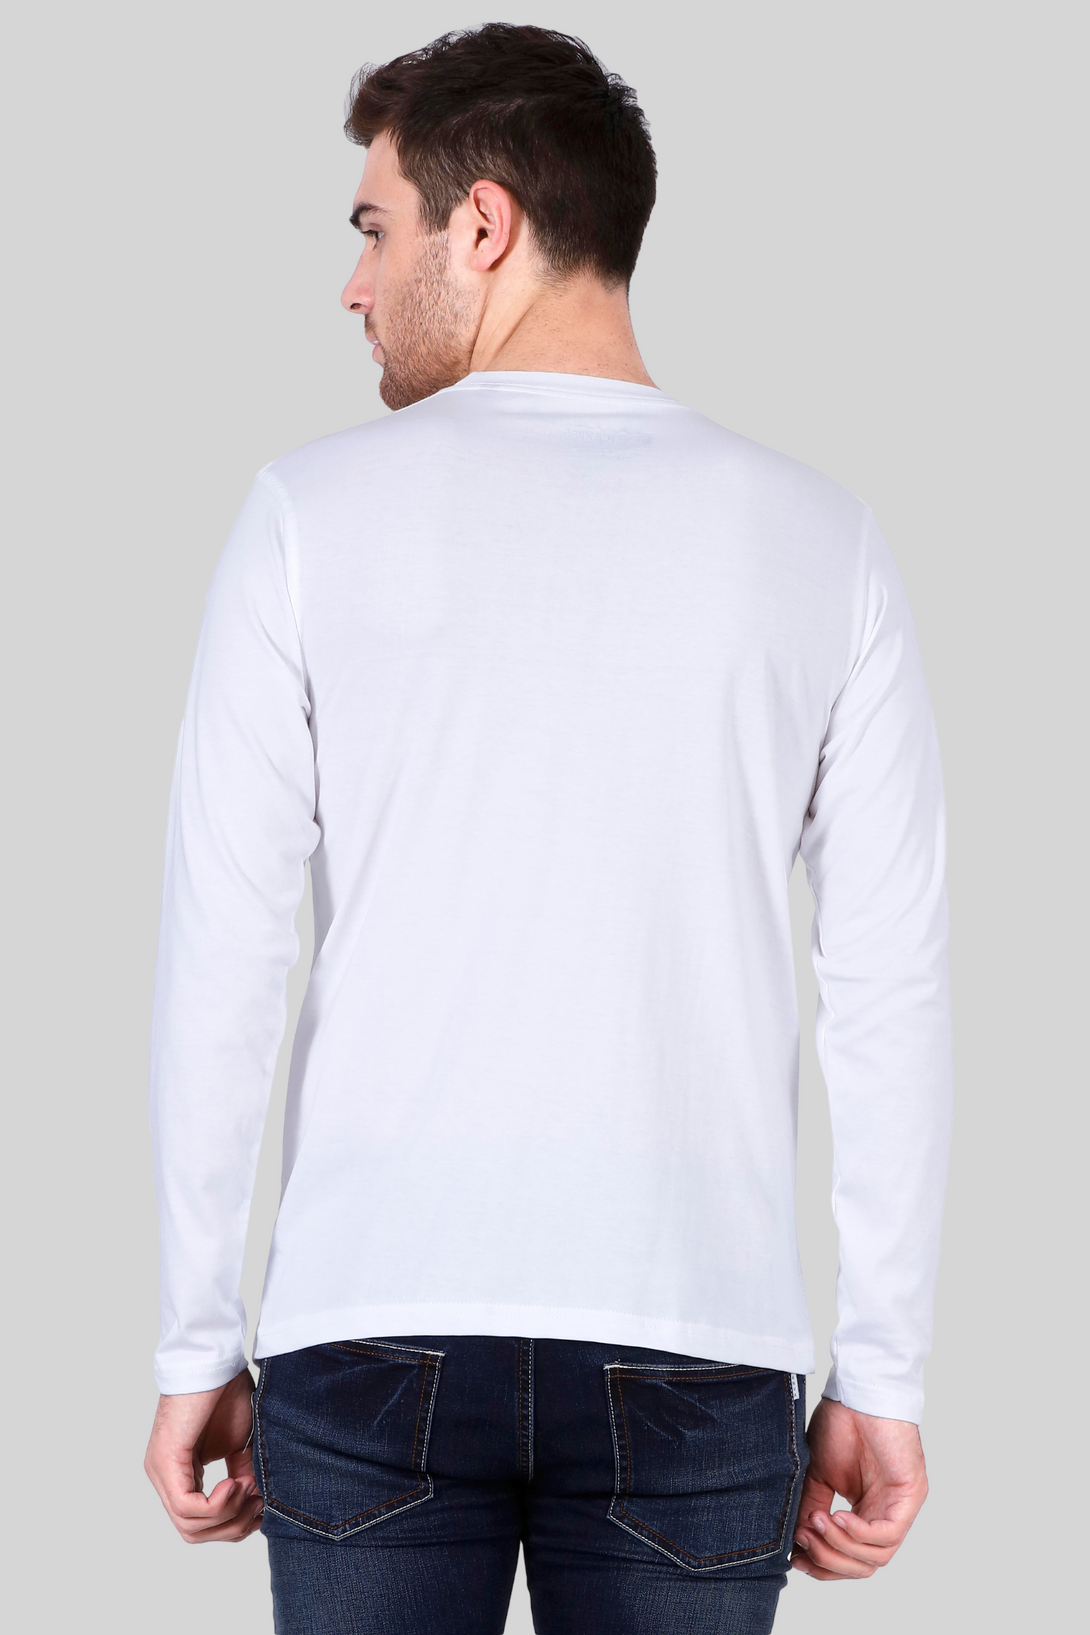 White Full Sleeve T-Shirt For Men - WowWaves - 9